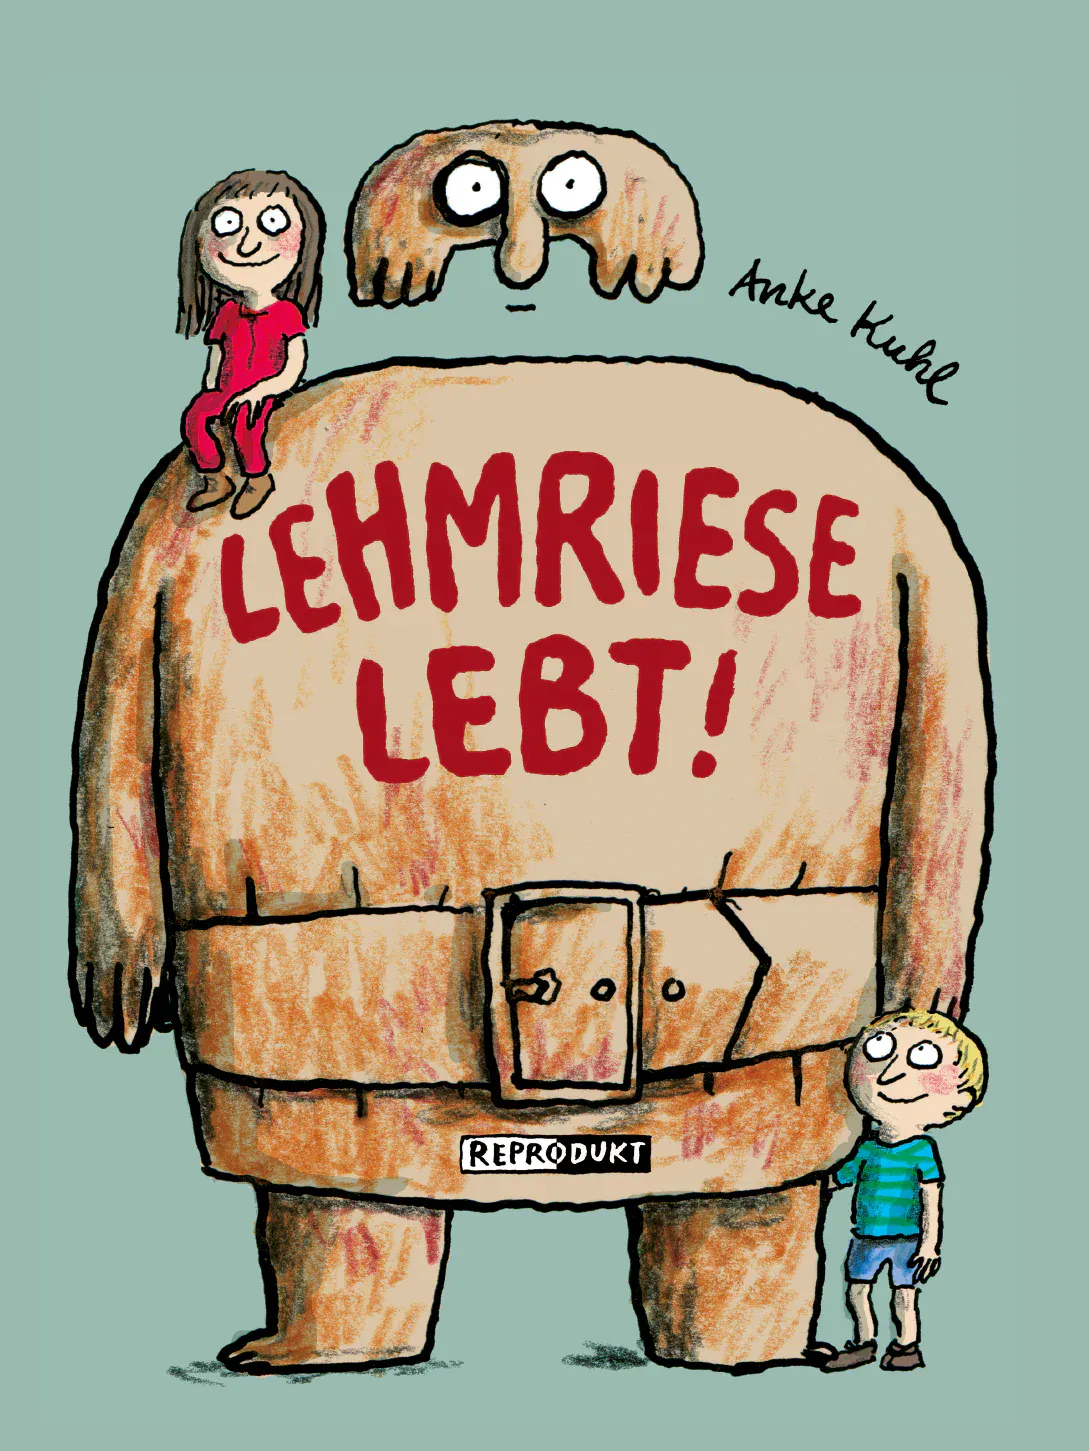 Cover von "Lehmriese lebt!" von Anke Kuhl aus dem Reprodukt Verlag.